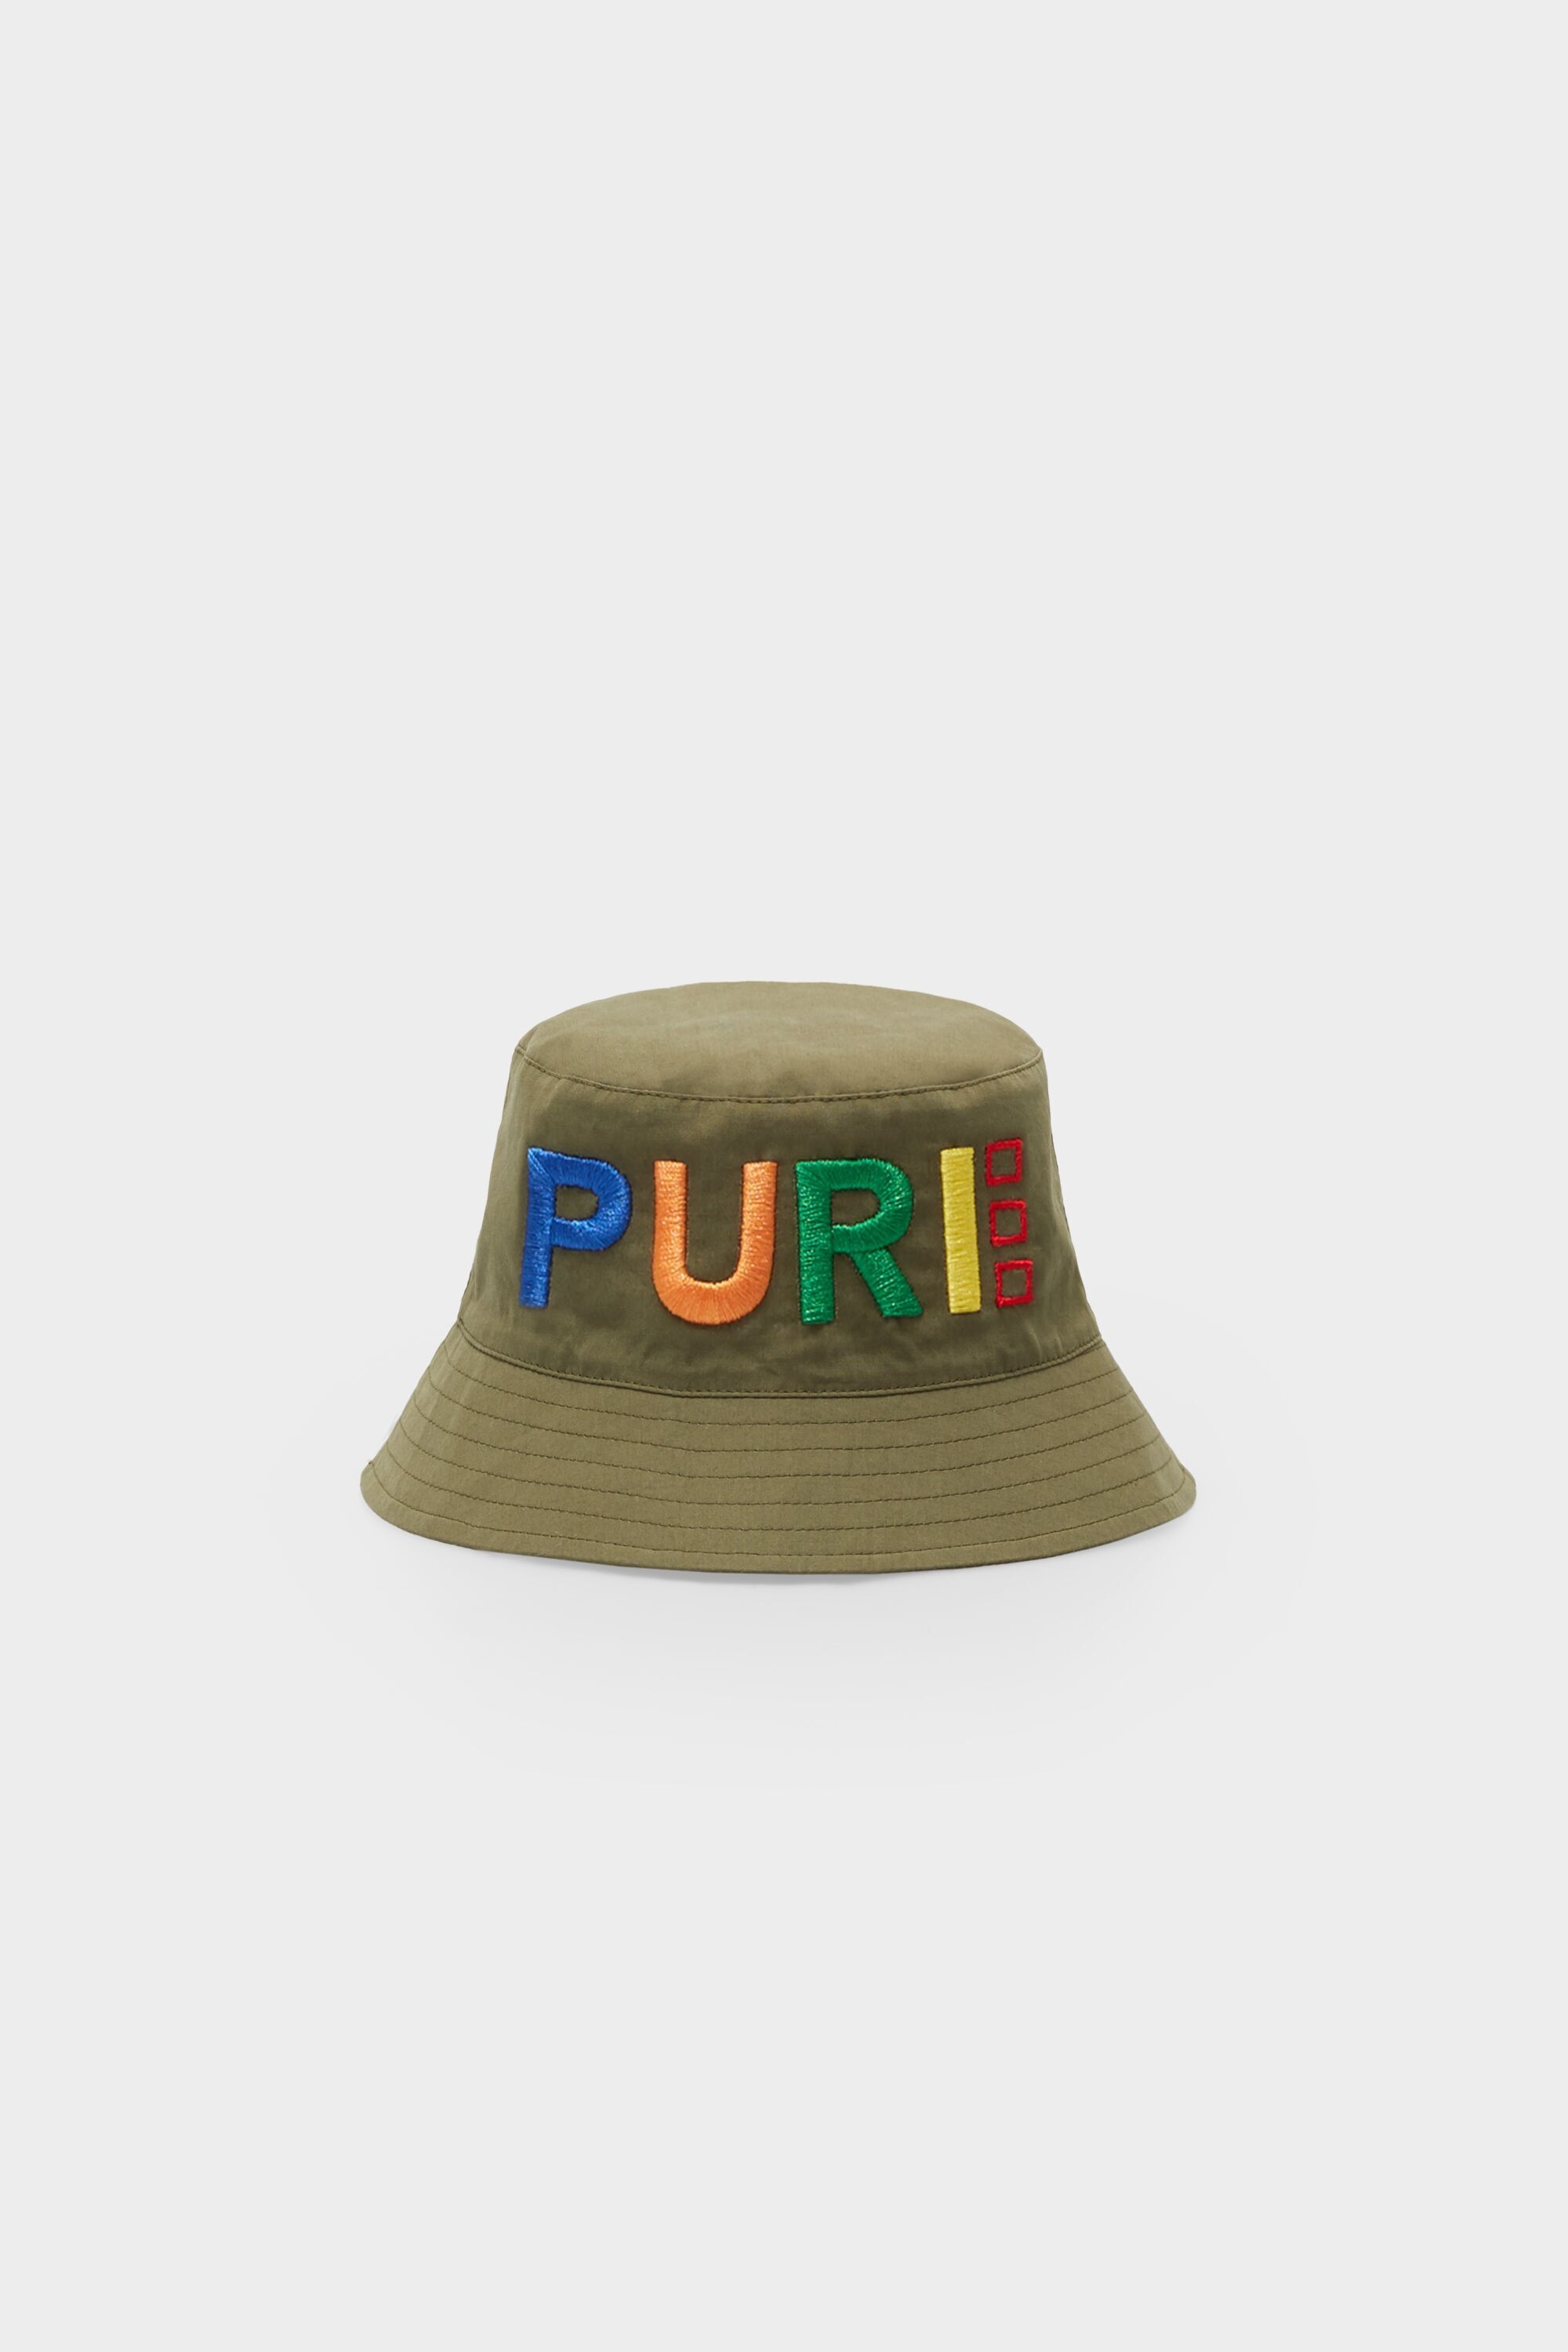 PURE reversible bucket hat